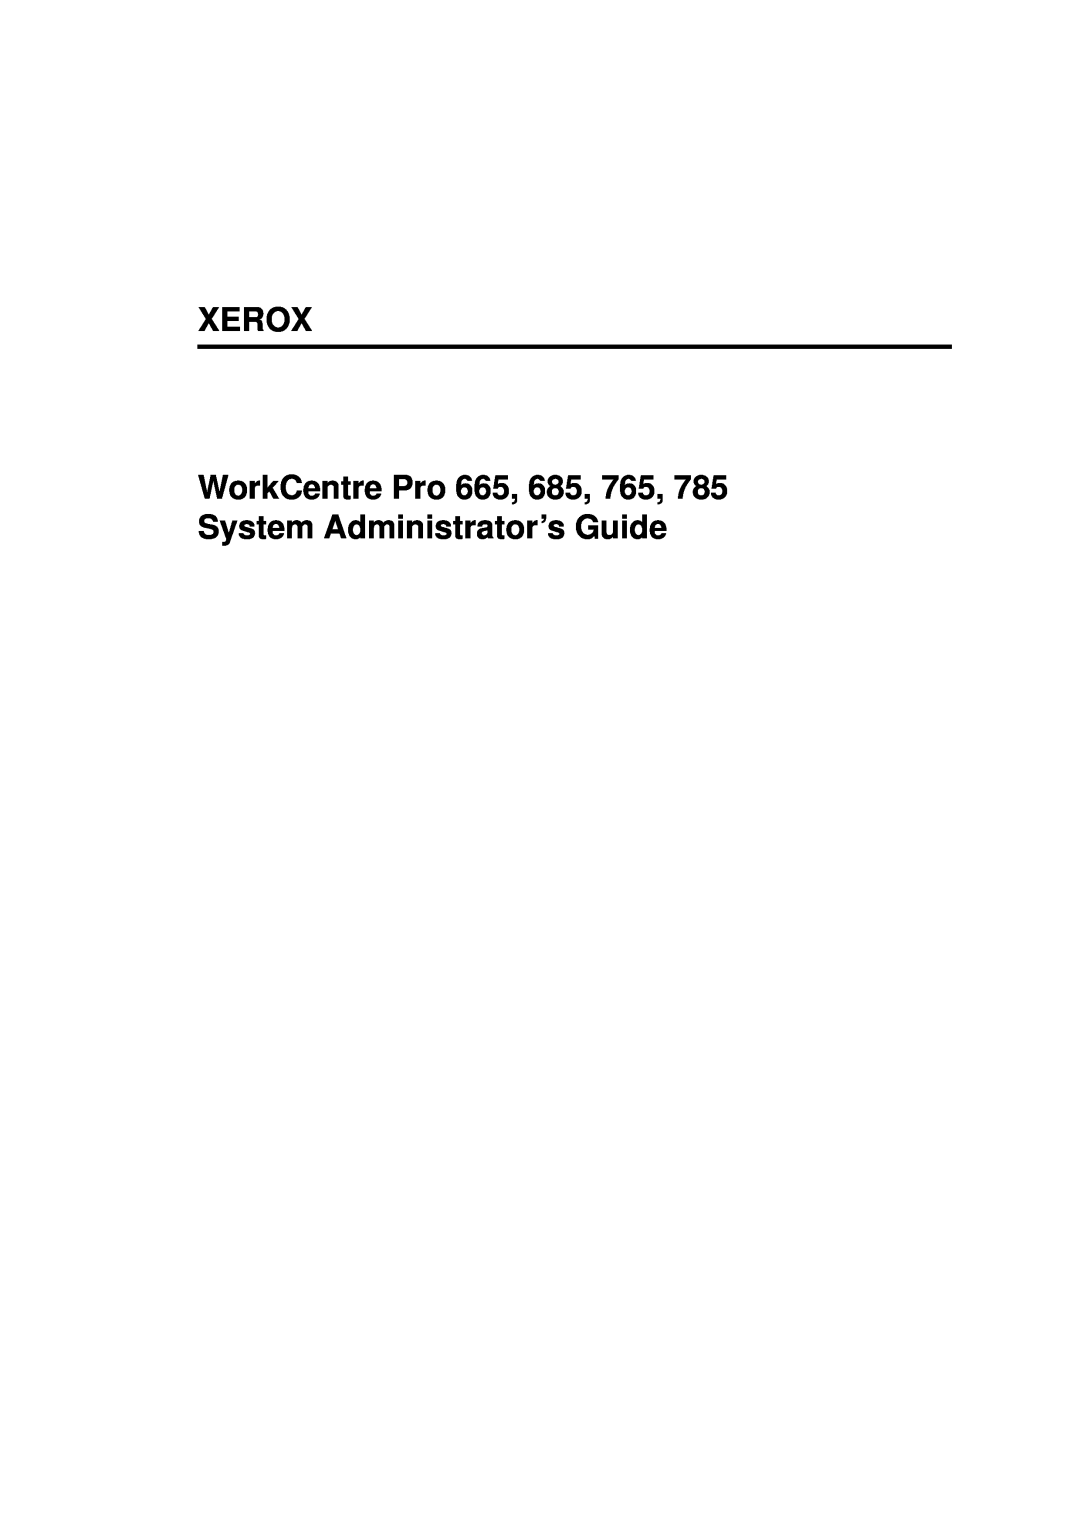 Xerox 665, 765, 685, 785 manual Xerox 